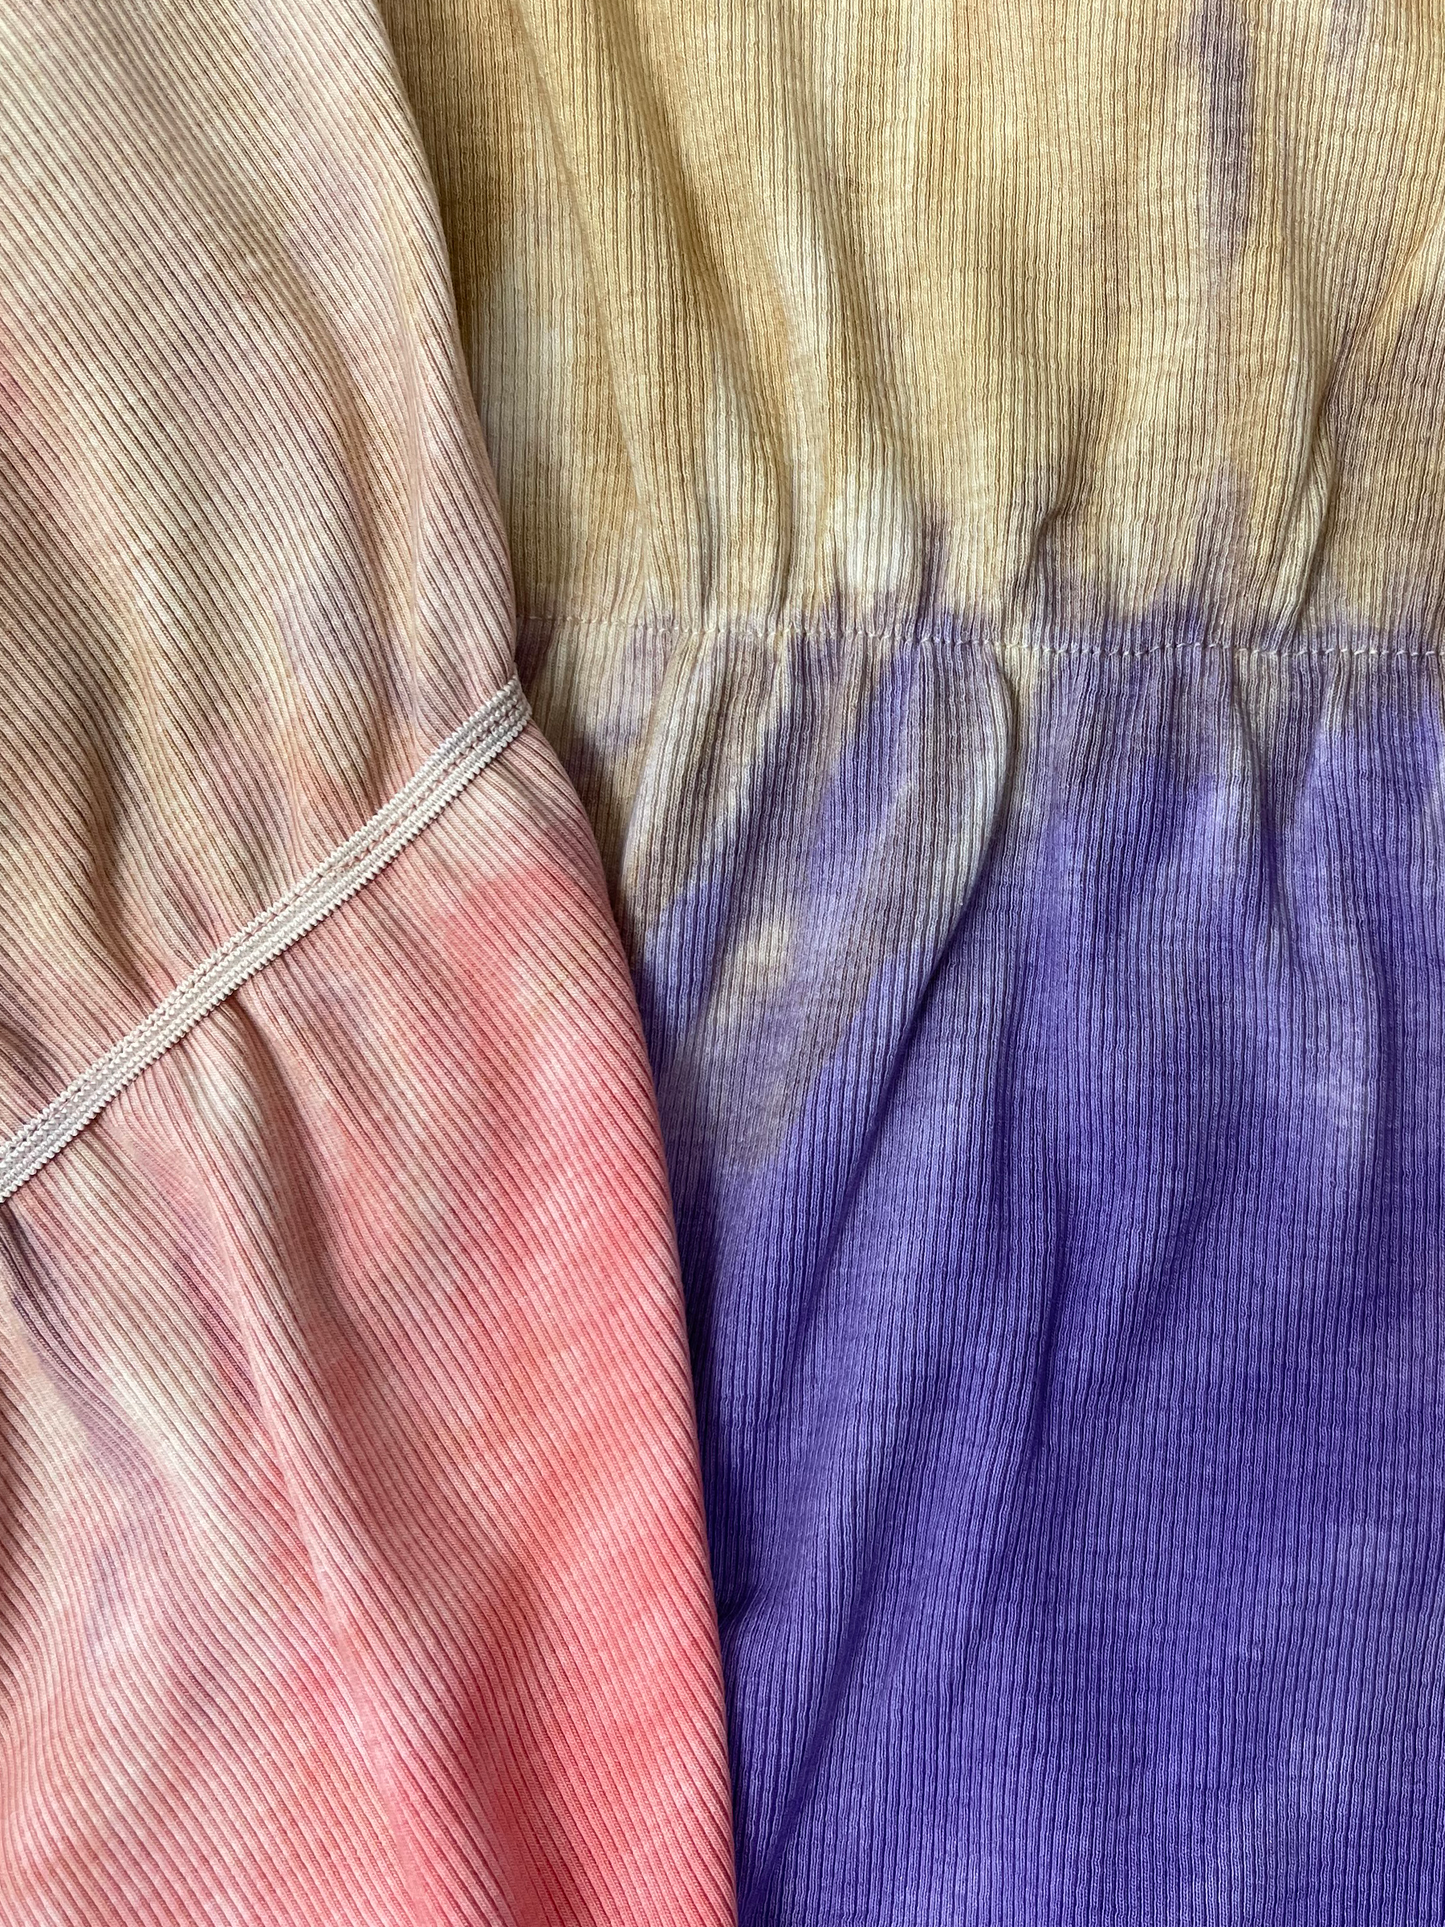 Celine Adaptive Dress Tie Dye